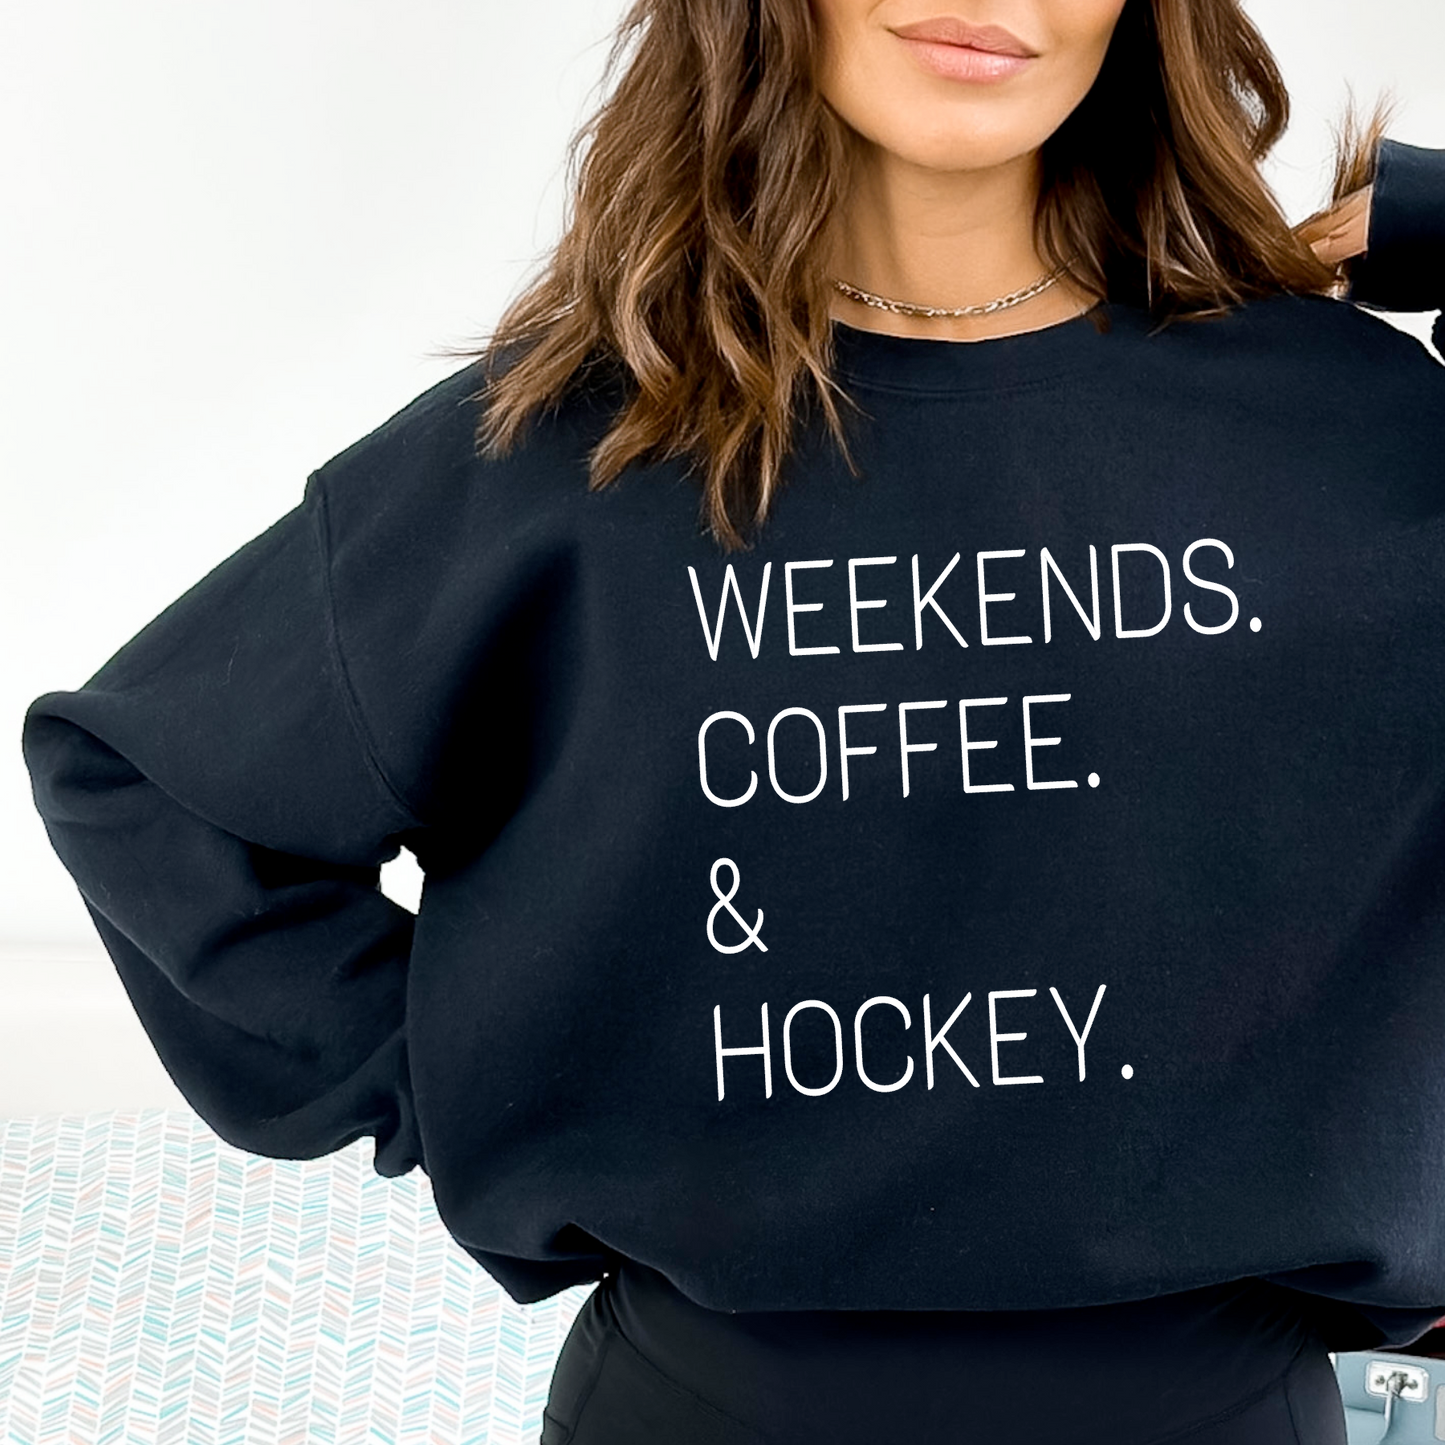 Weekends. Coffee. & Hockey.